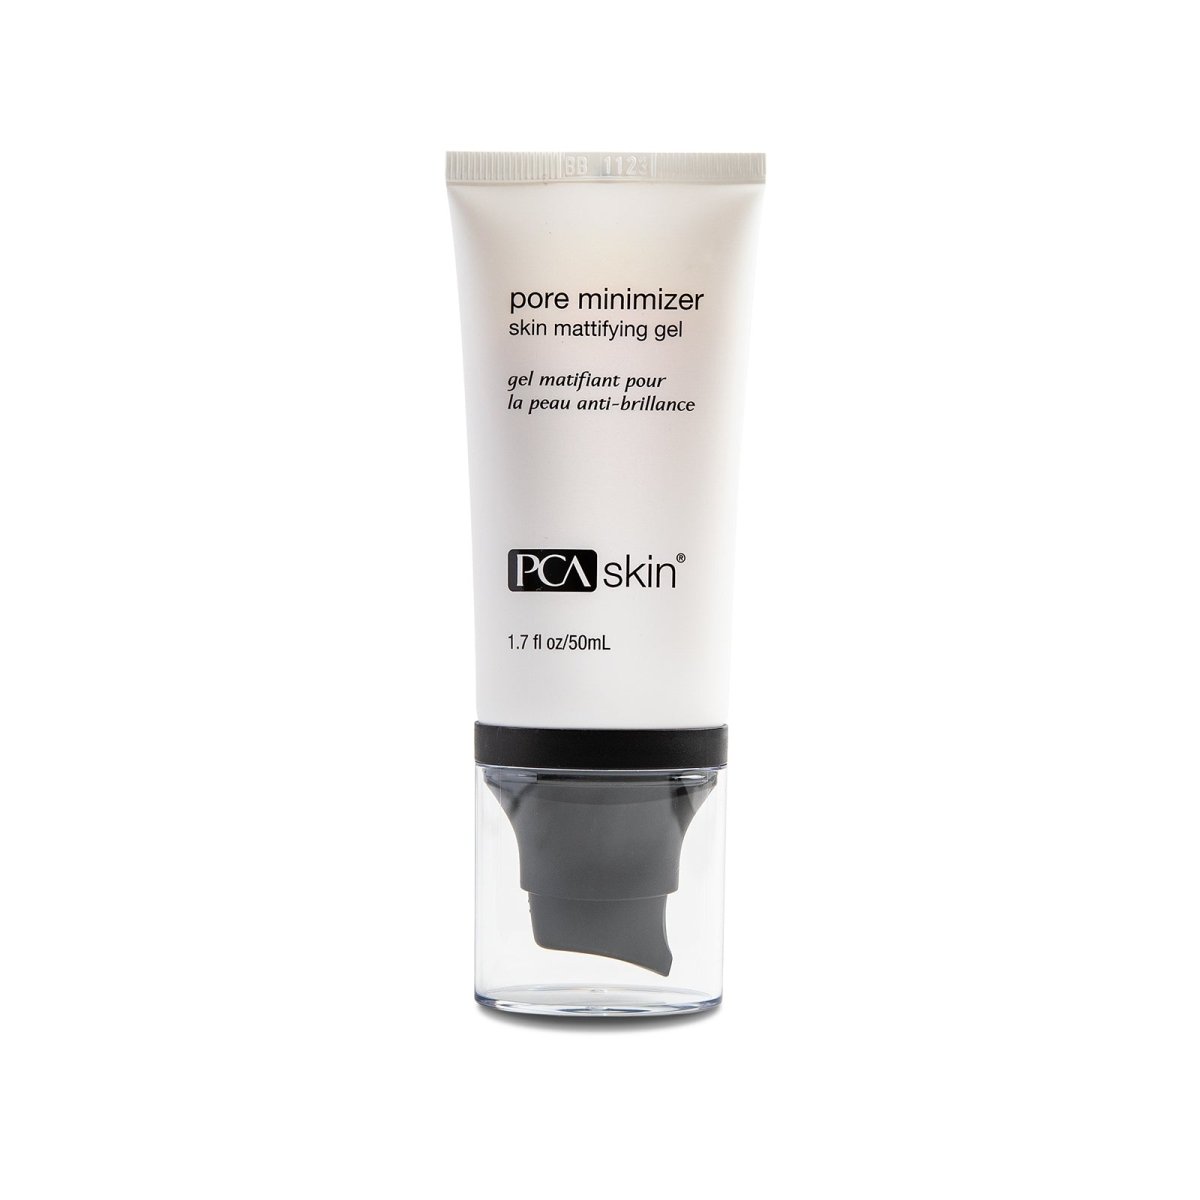 PCA Skin Pore Minimizer Mattifying Facial Gel - SkincareEssentials